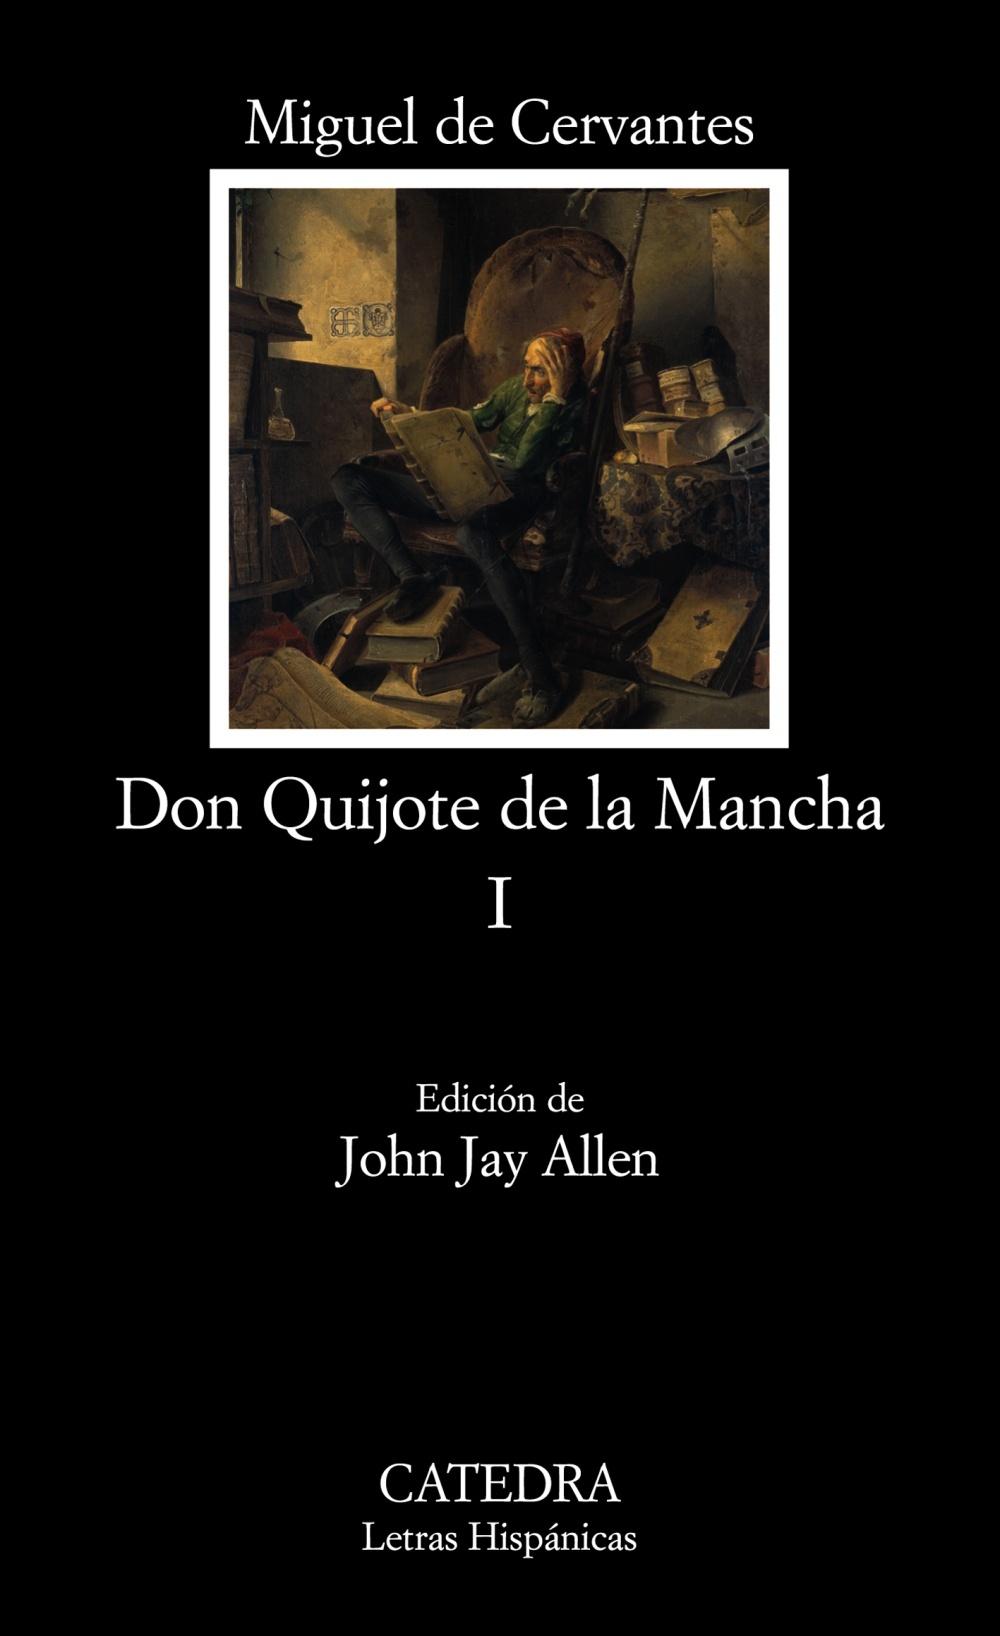 Foto Don Quijote de la Mancha, I foto 65316